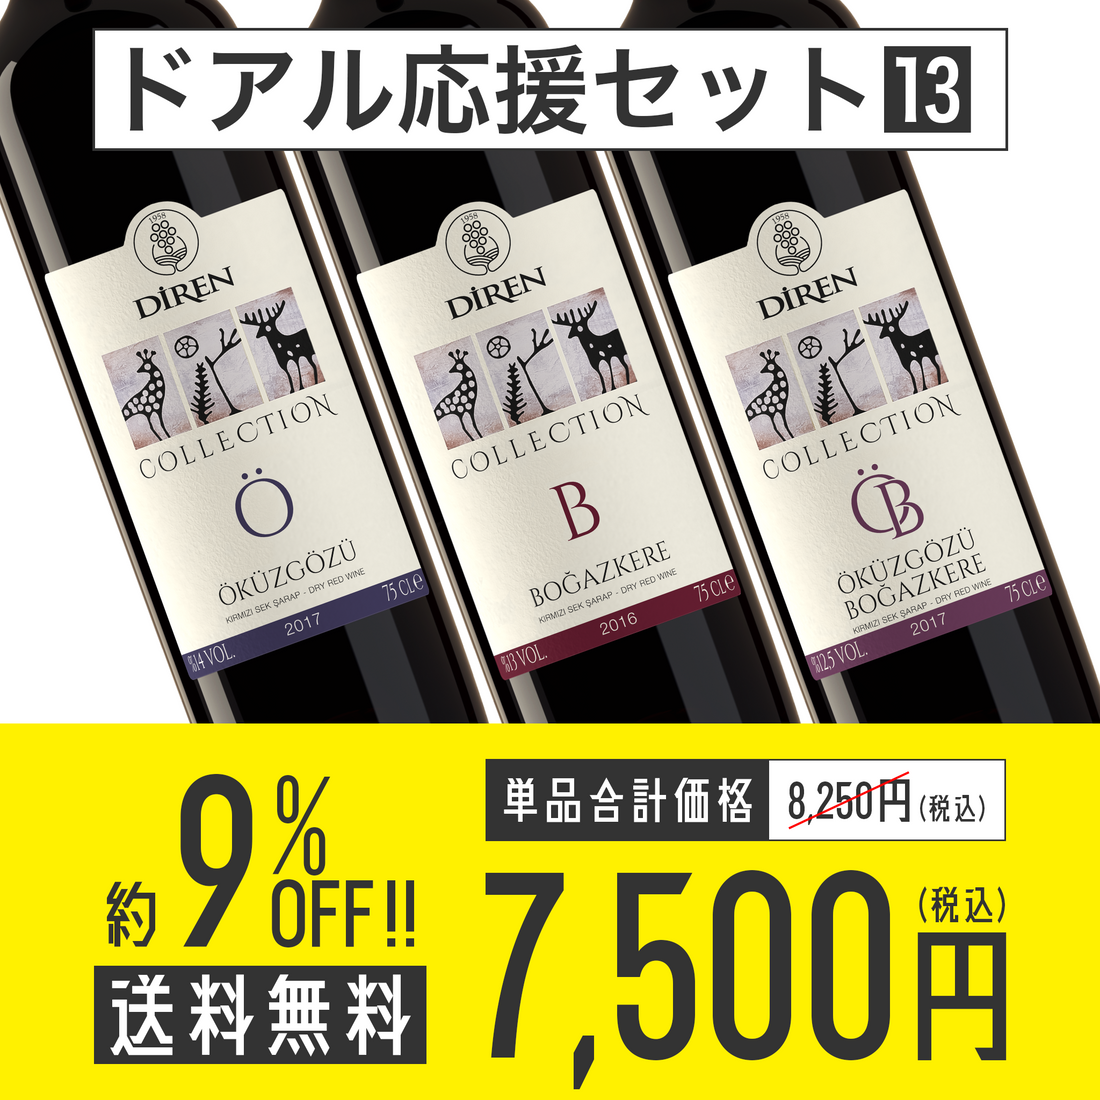 【送料無料】ドアル応援セット No.13 Diren Wine コレクション・シリーズ 赤3種各1本セット